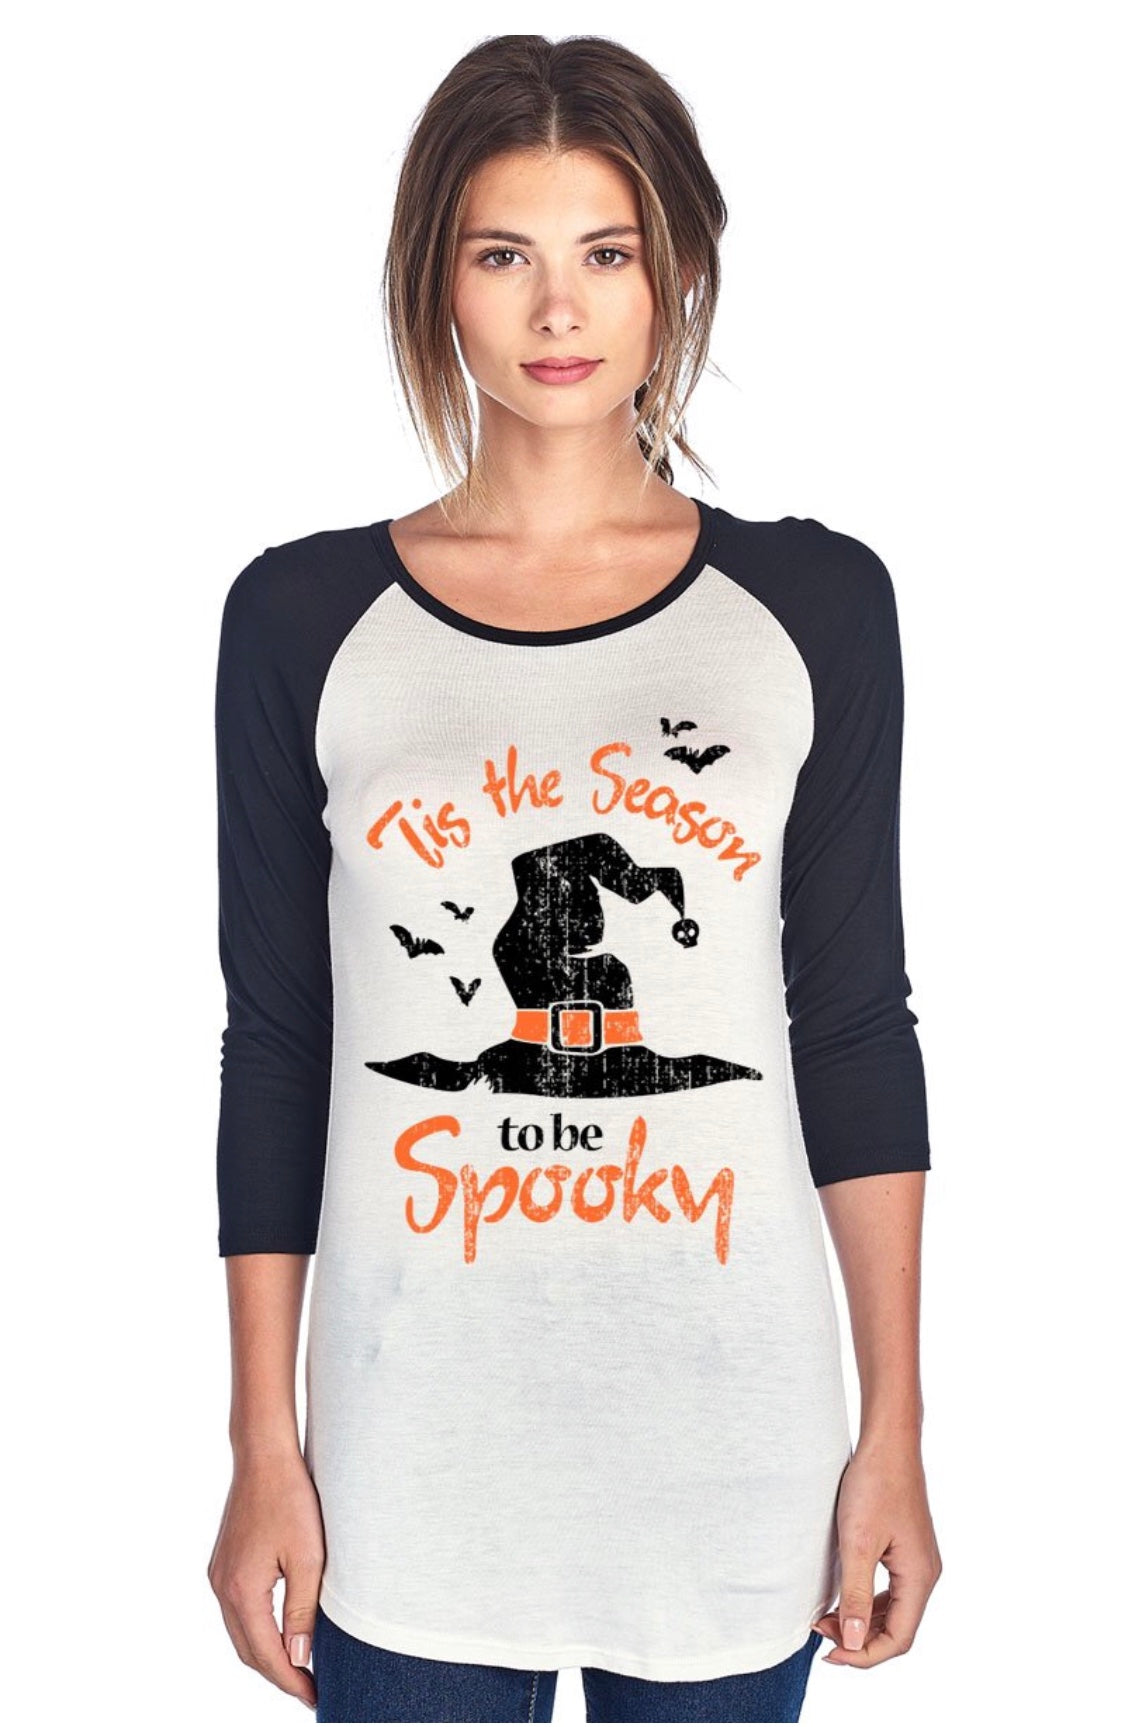 Spooky printed top